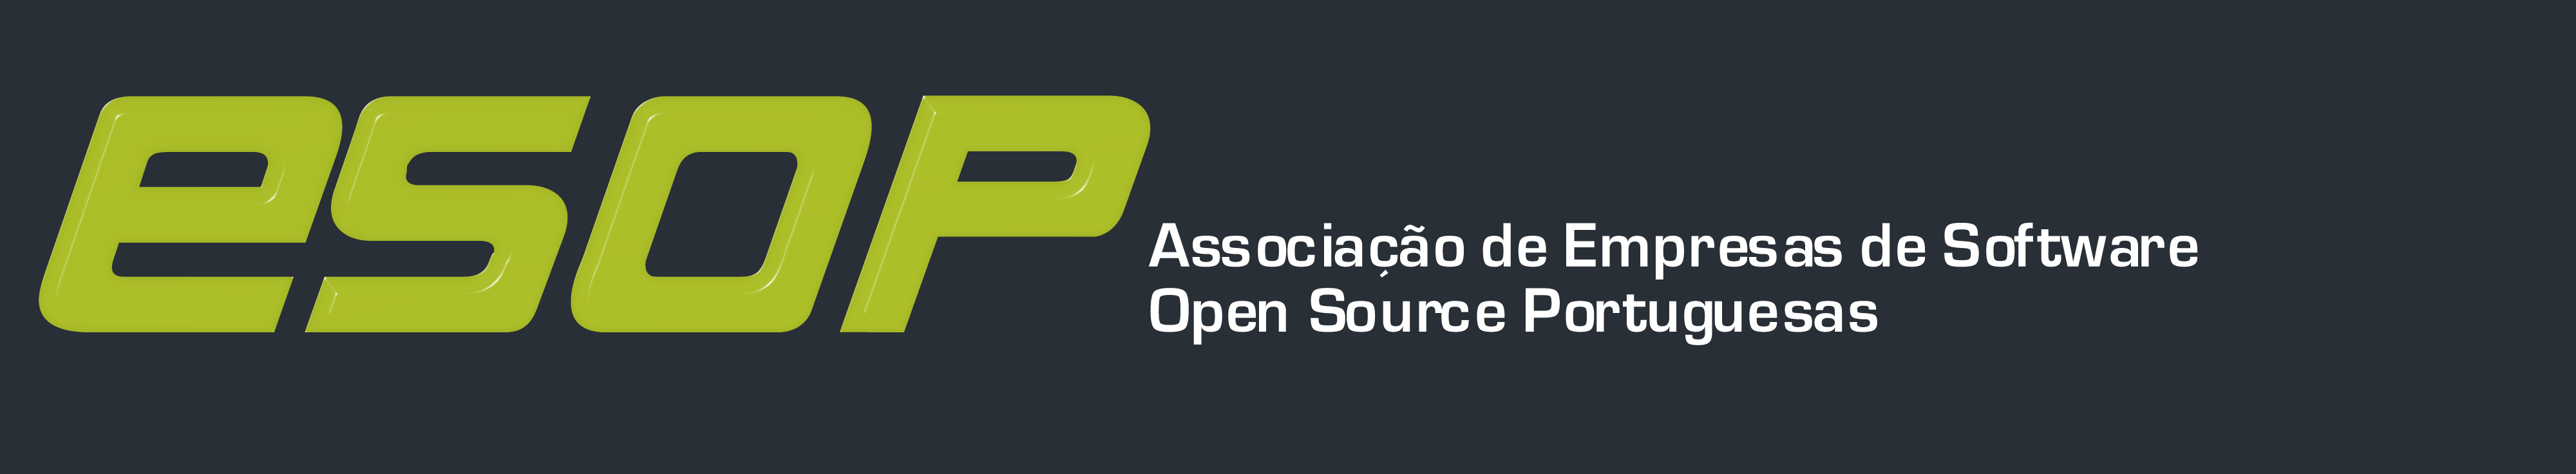 Associação da Empresas de Software Open Source em Portugal